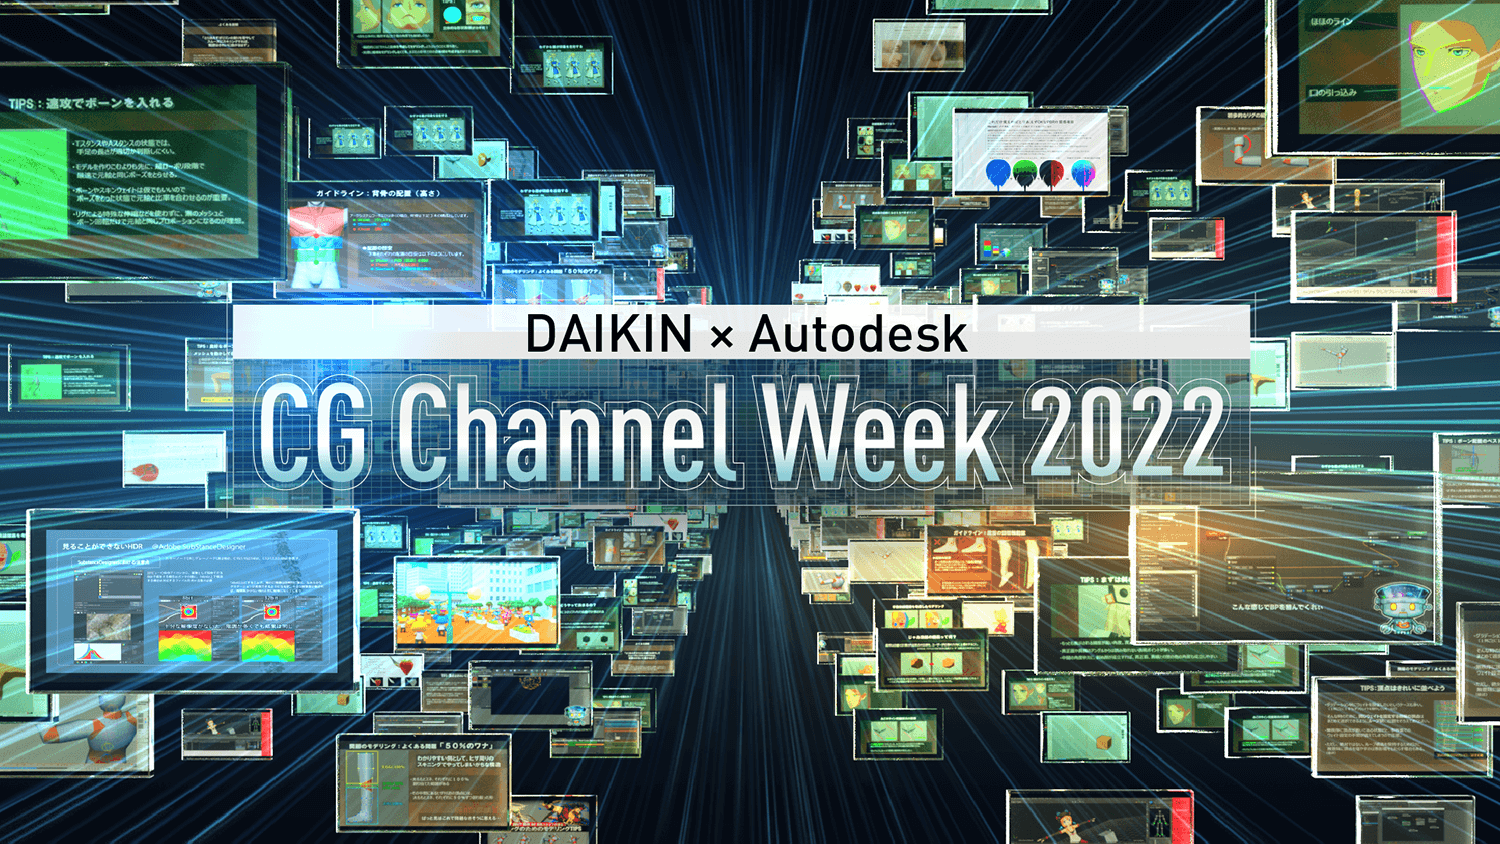 CG Channel Week 2022